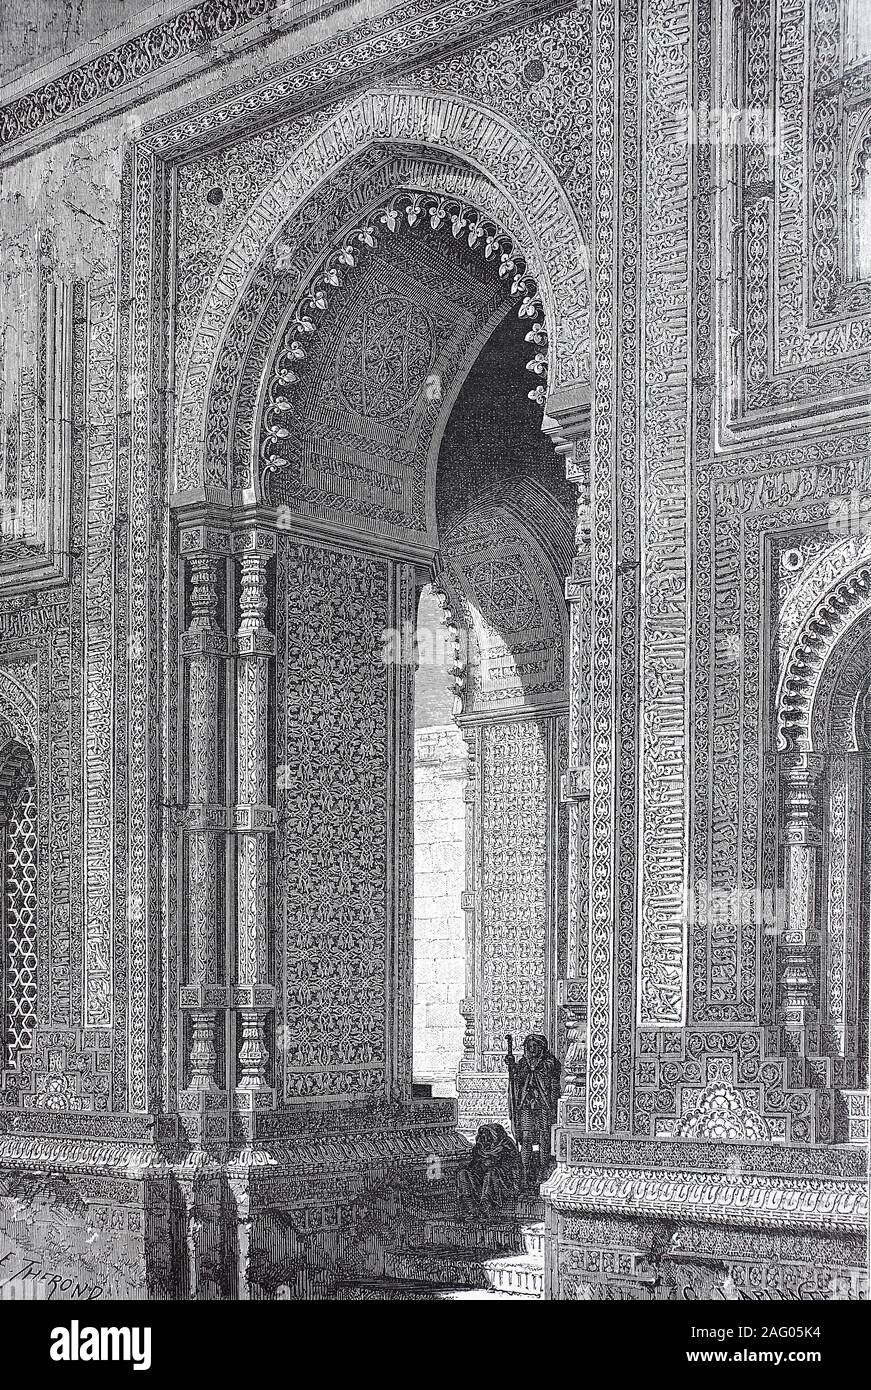 View of the Porte d' Aladin, the Aladin gate, of the Kootub-Minar-Mosque, Delhi, India  /  Ruinen Aladintor der Quwwat-ul-Islam-Moschee, Macht-des-Islam-Moschee, Qutb-Komplex im Süden von Delhi, Indien, Qutb-Komplex im Süden von Delhi, Indien, Reproduction of an original print from the 19th century, digital improved / Reproduktion einer Vorlage aus dem 19. Jahrhundert, digital verbessert Stock Photo